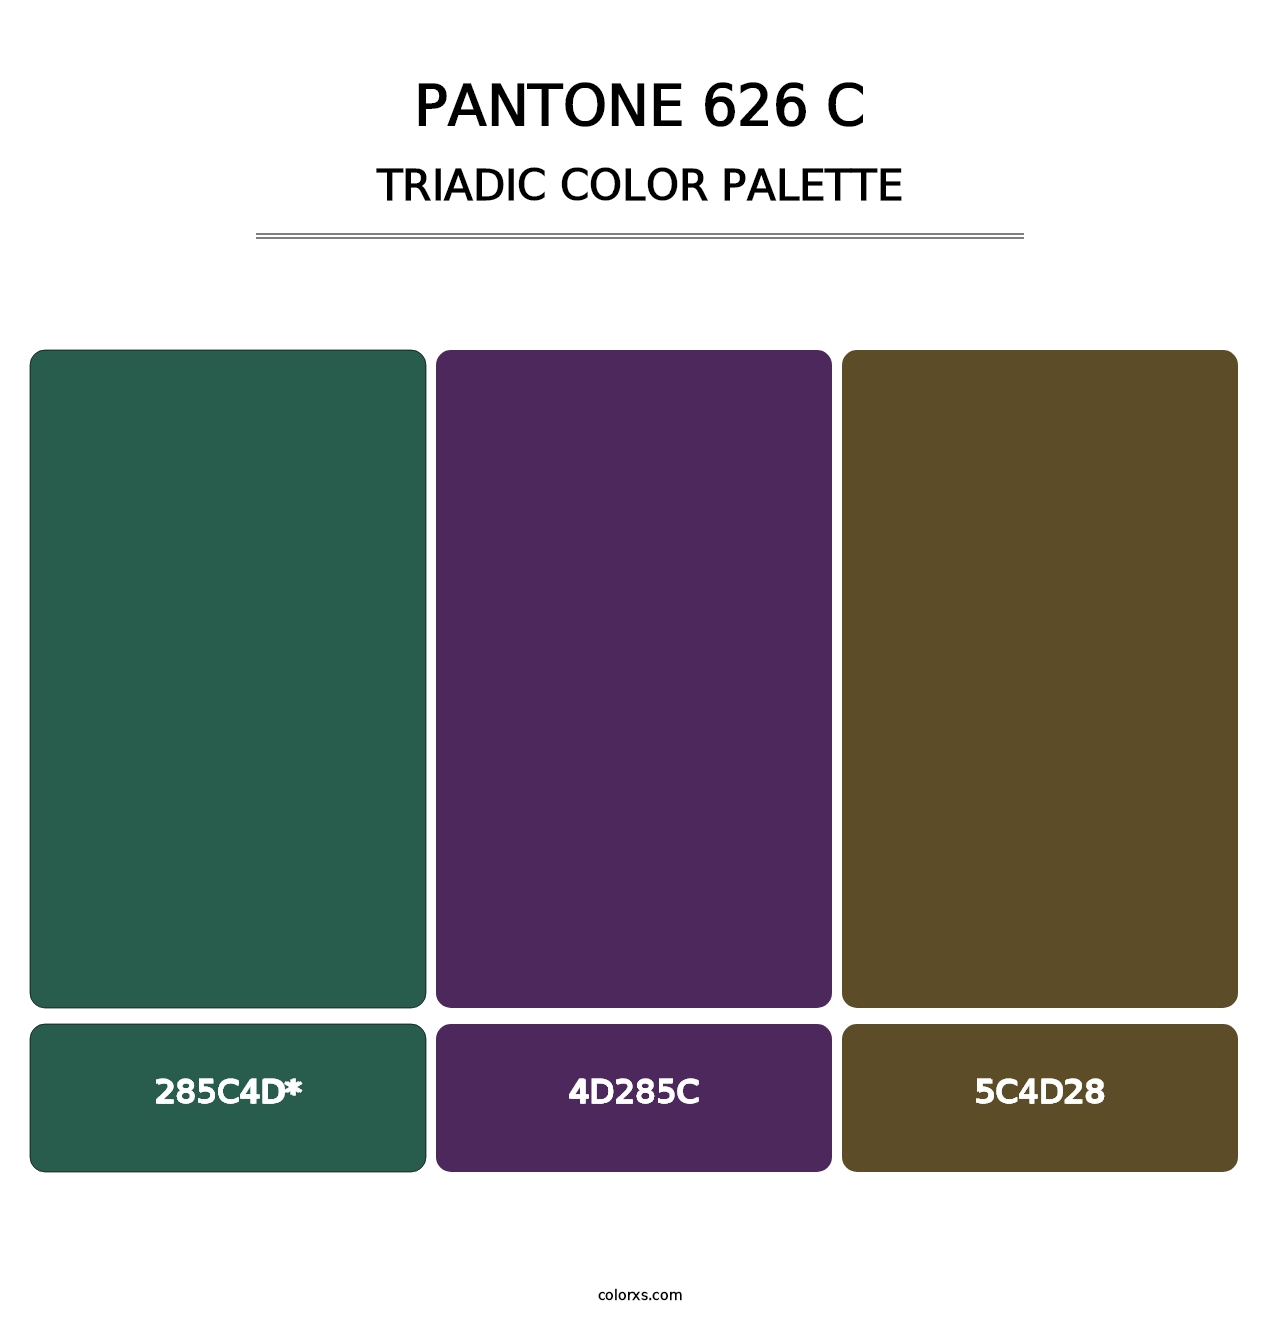 PANTONE 626 C - Triadic Color Palette